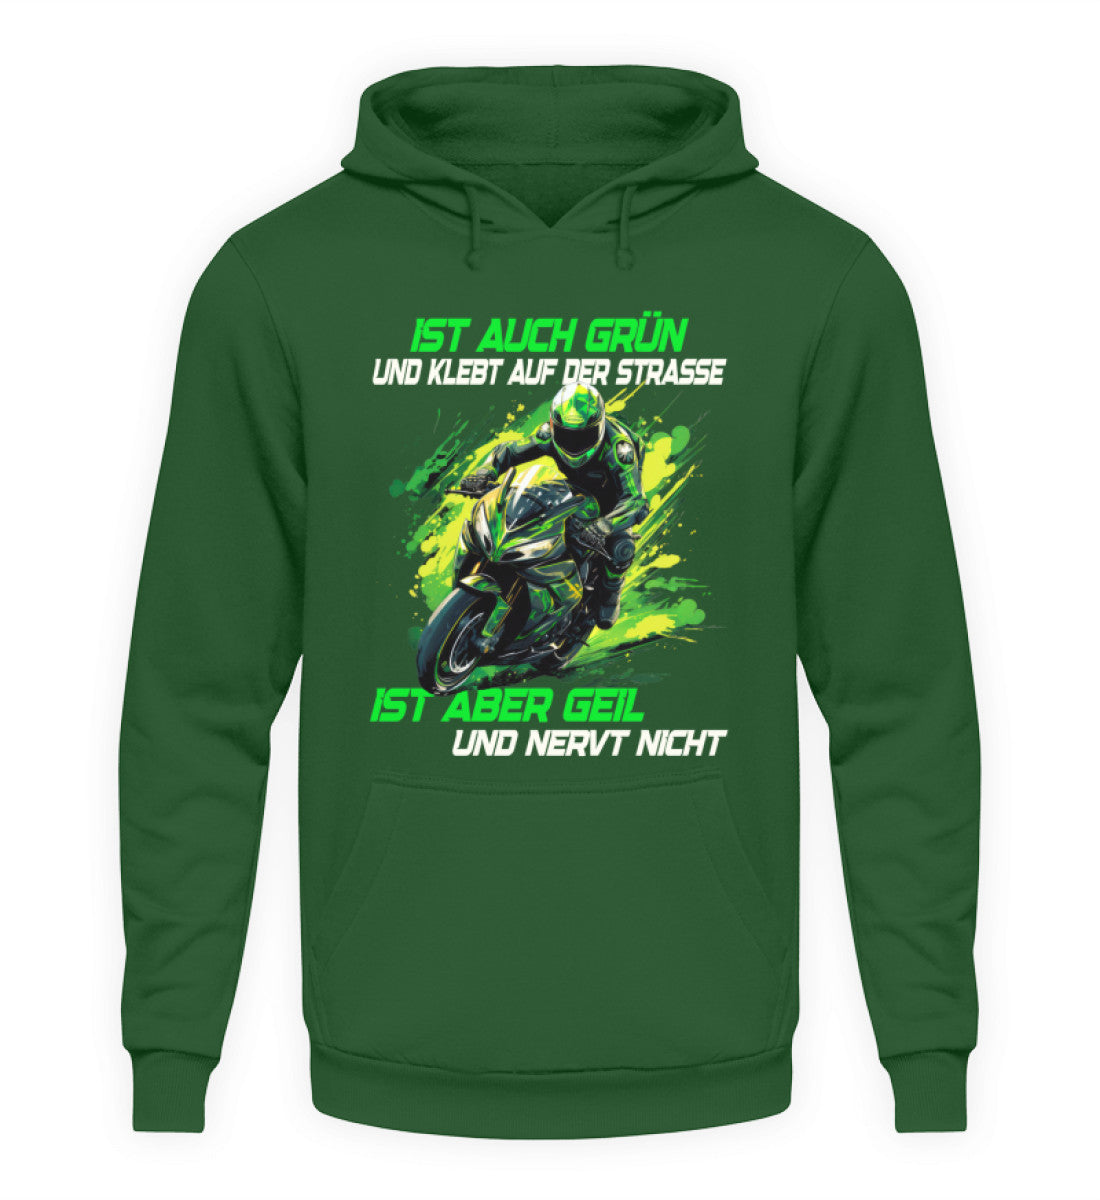 Ein Hoodie für Motorradfahrer von Wingbikers mit dem Aufdruck, Ist auch grün und klebt auf der Straße, ist aber geil und nervt nicht, in dunkelgrün.